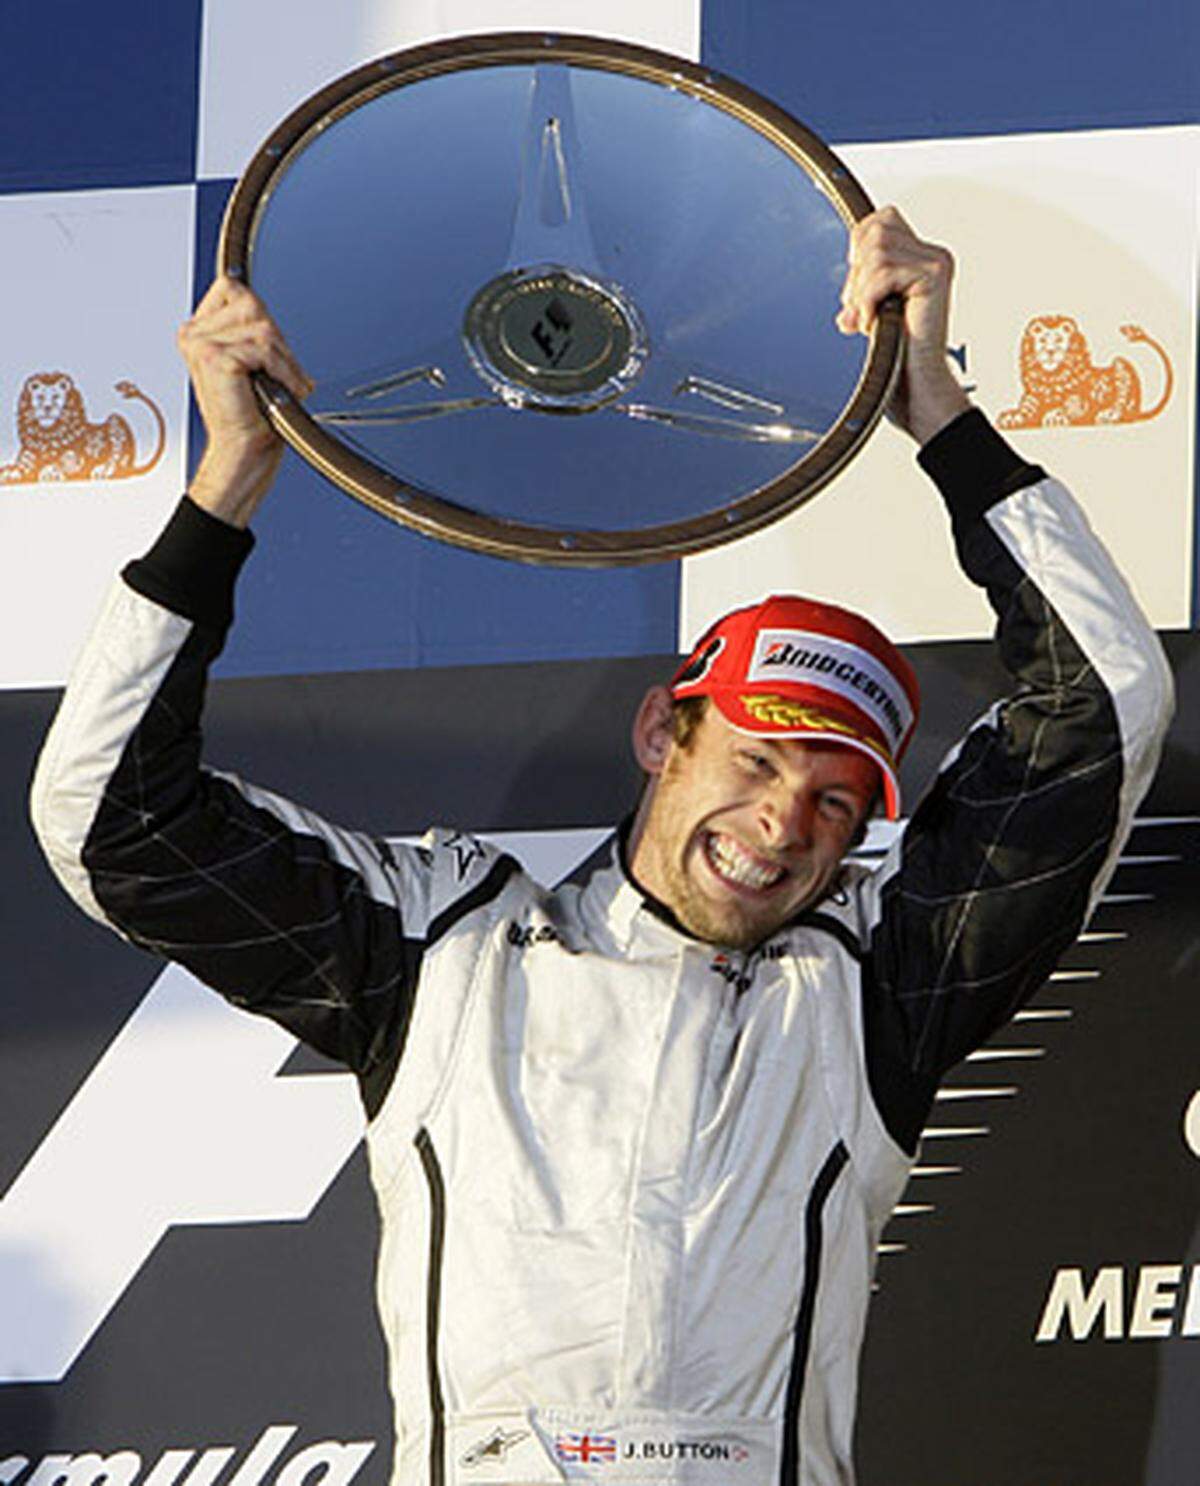 Streckenbezeichnung: Albert Park Grand Prix Circuit  Streckenlänge: 5,303 km  Runden: 58  Renndistanz: 307,574 km  Sieger 2009: Jenson Button  Homepage: http://www.grandprix.com.au